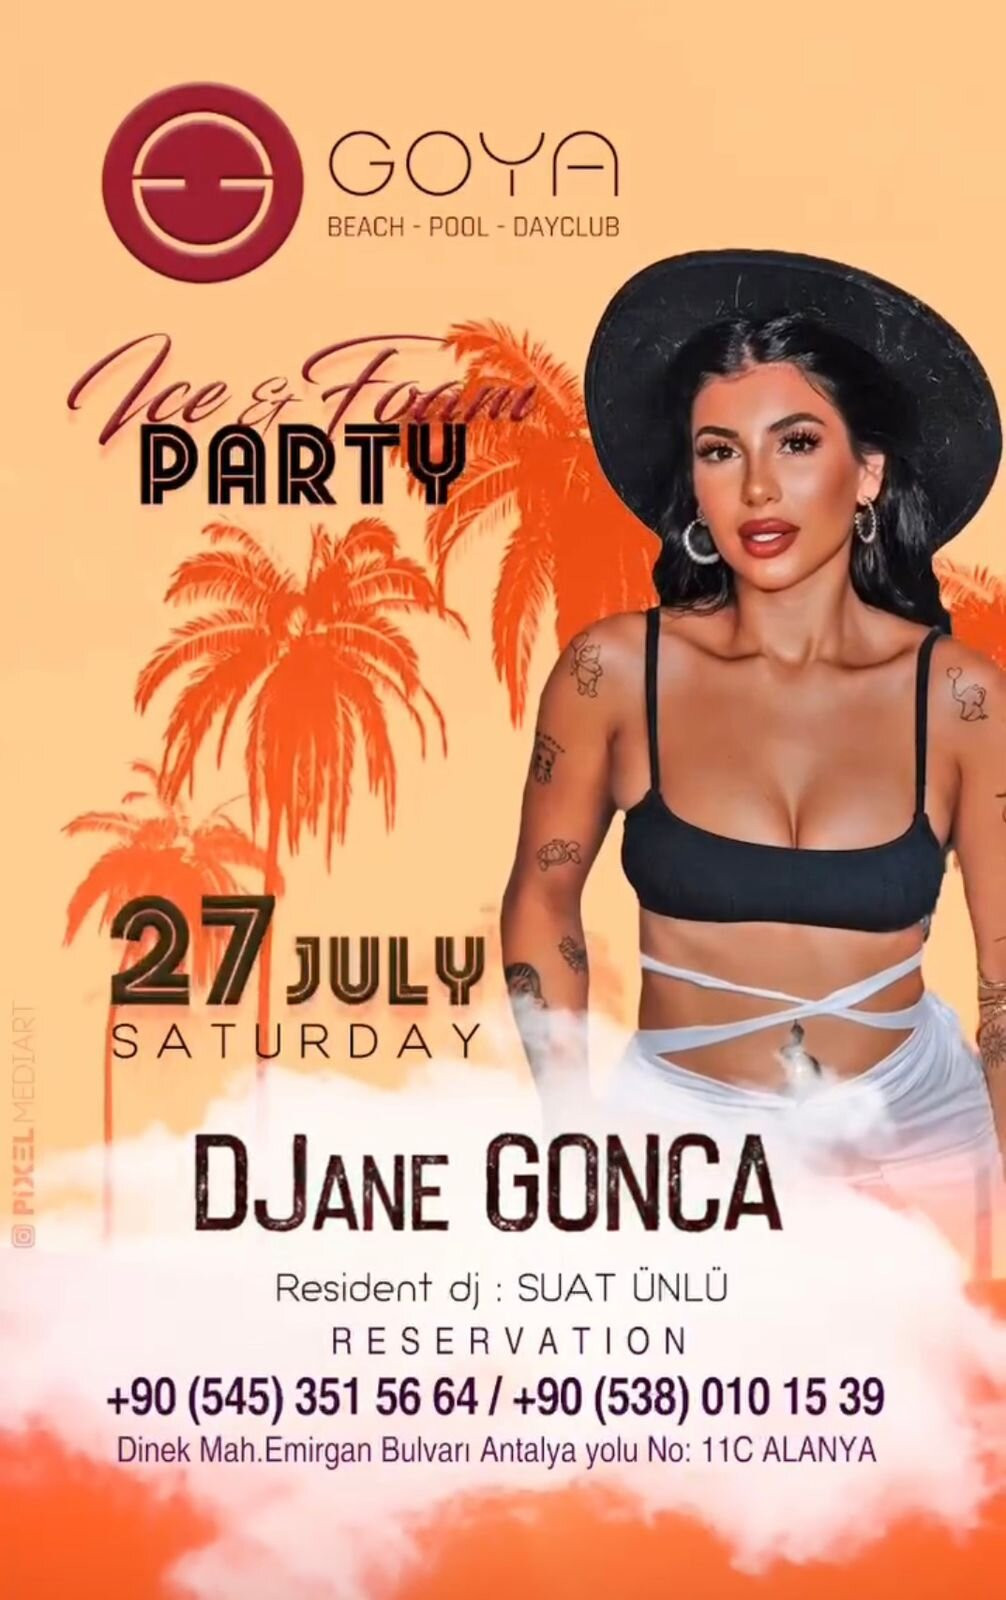 July 27 DJane Gonca at Goya Beach Club